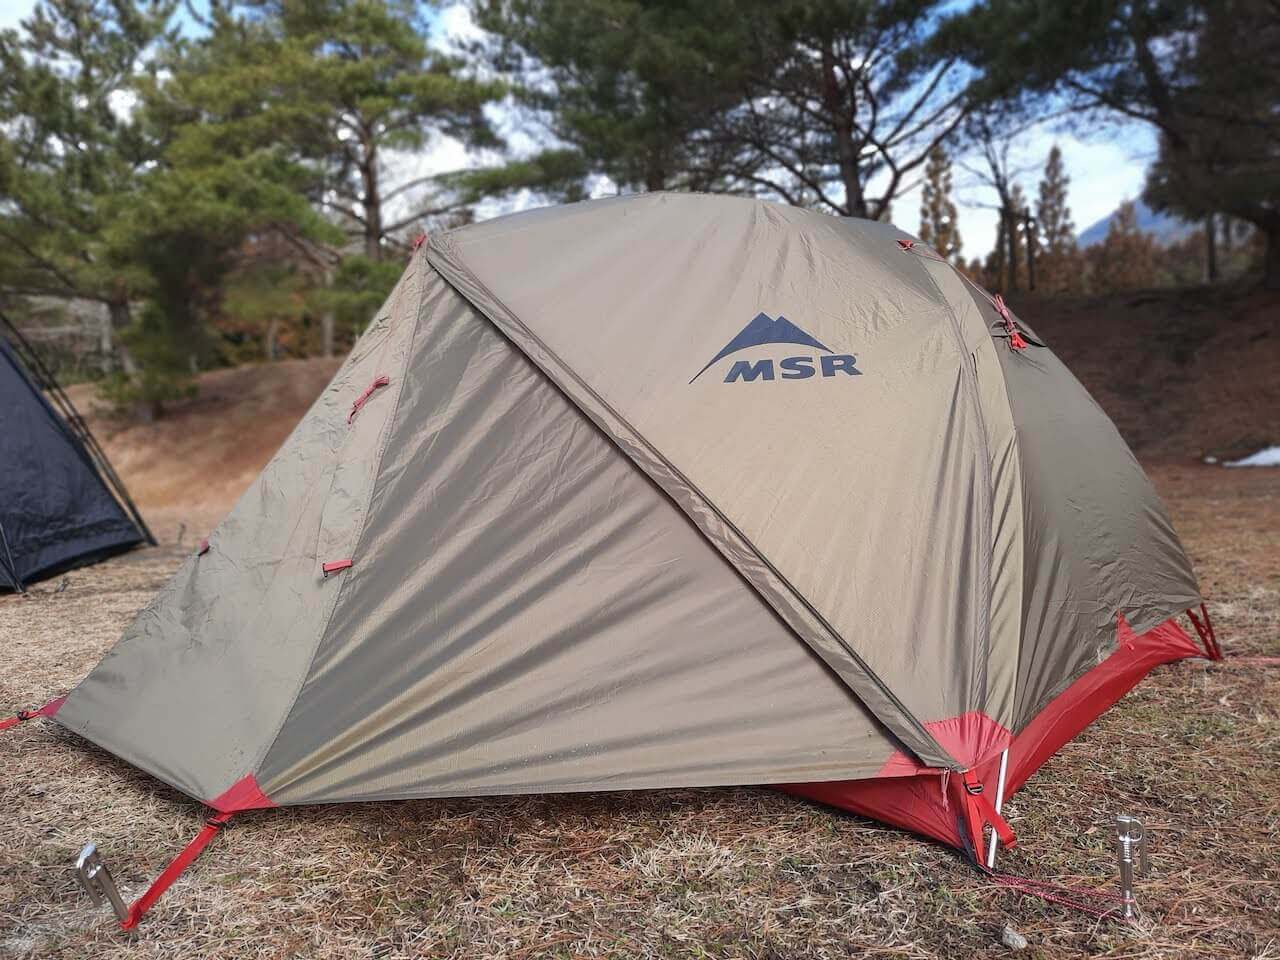 MSRのテント「エリクサー2グリーン」は、ソロキャンプにおすすめの